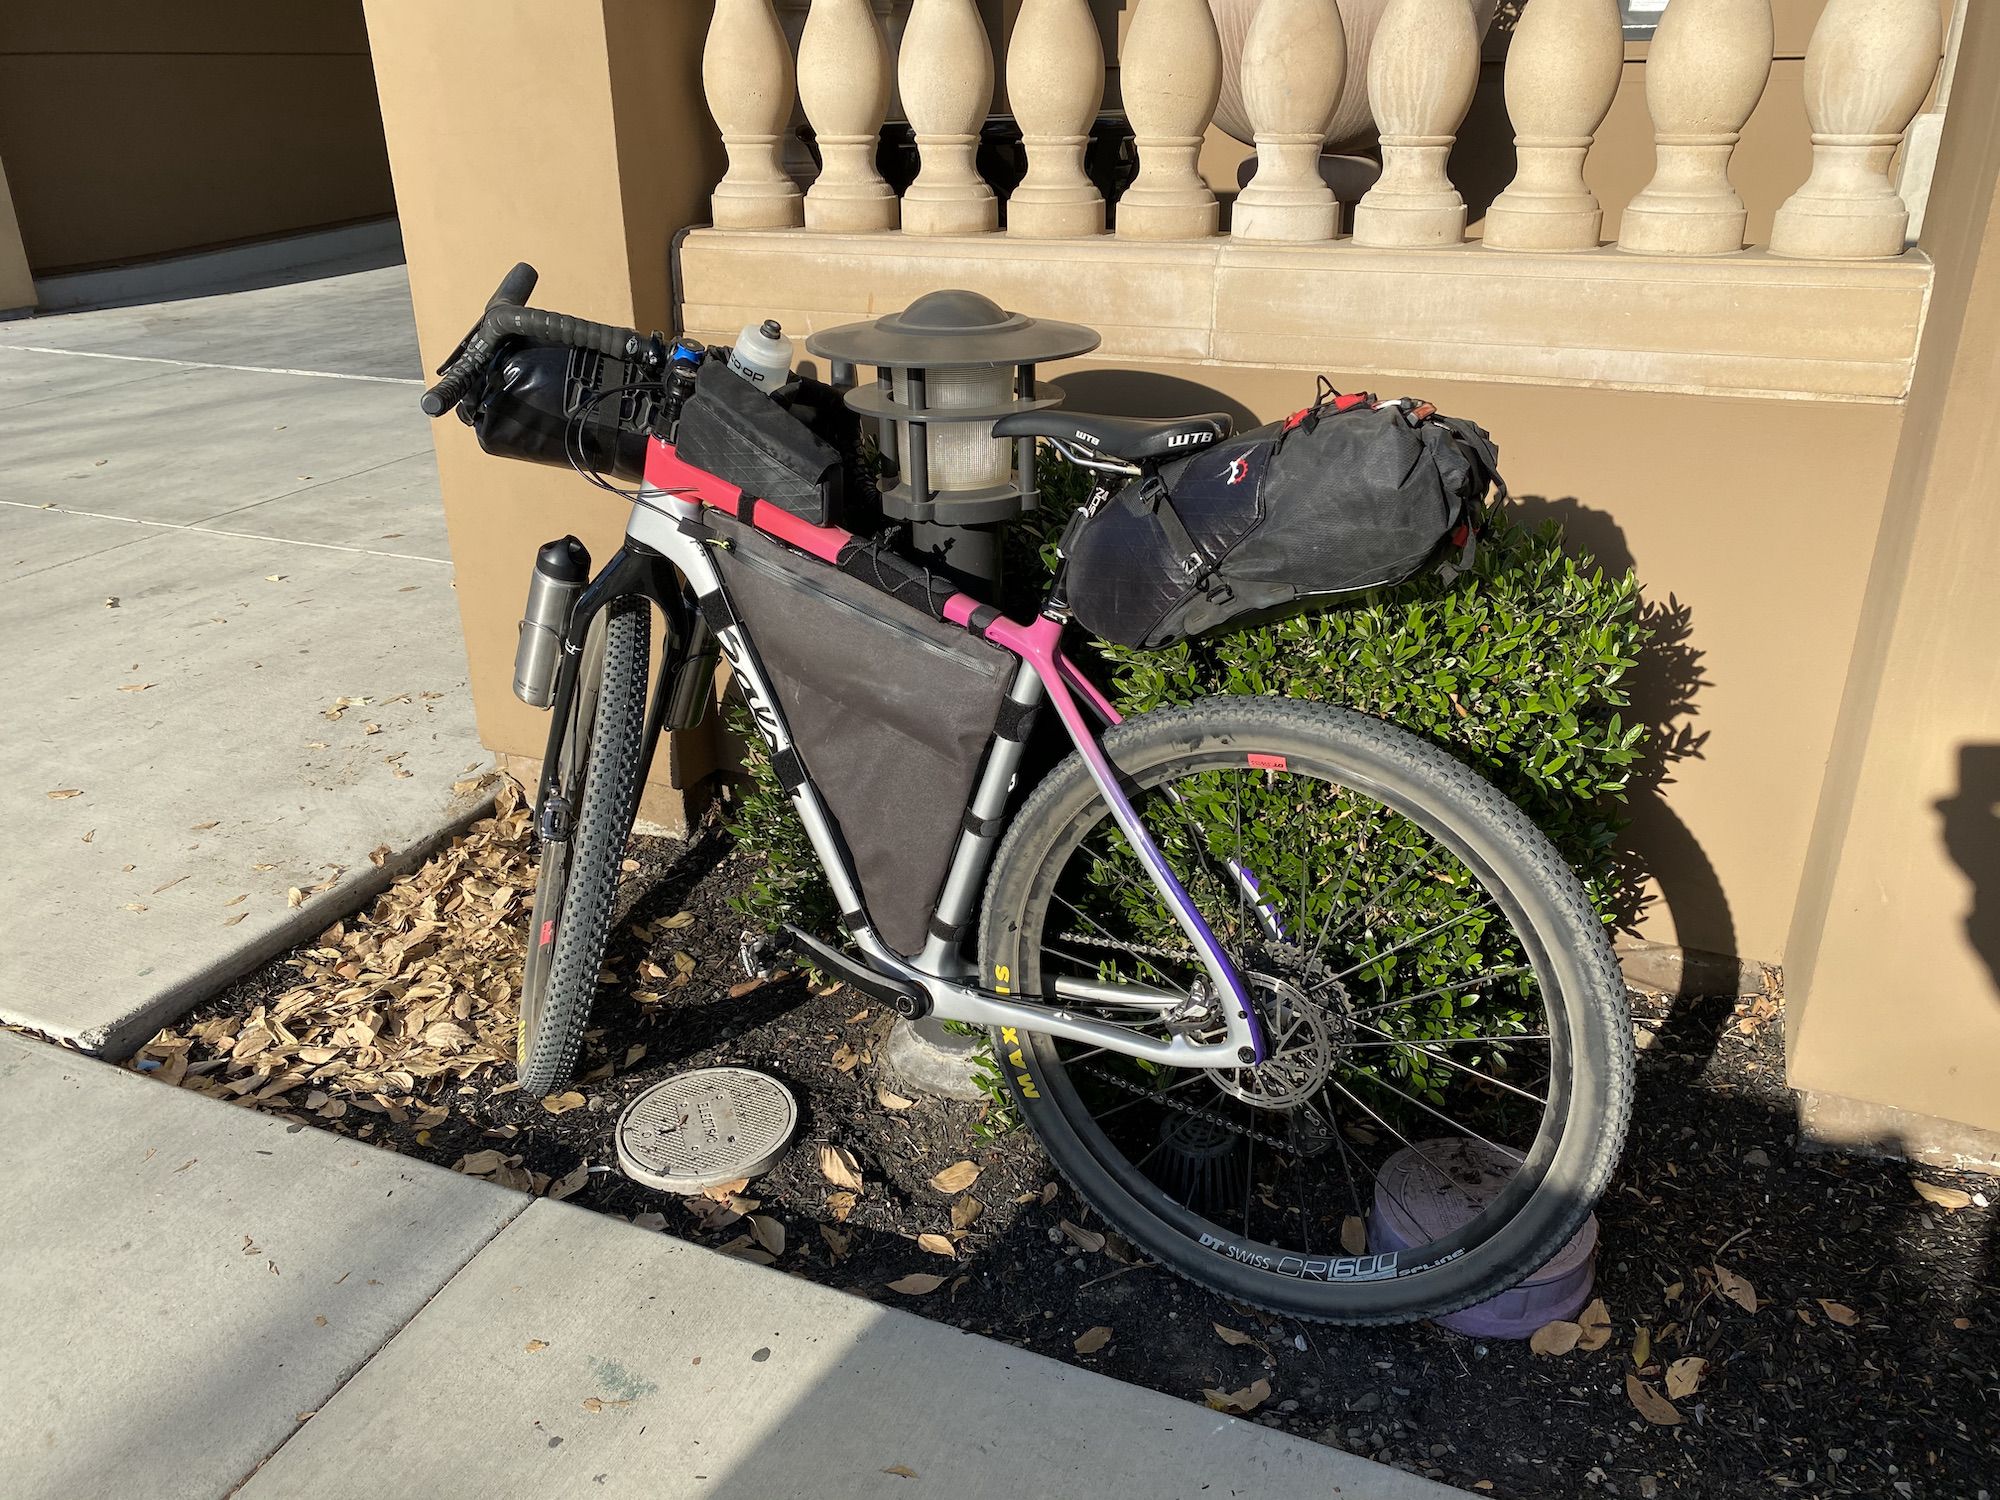 A bike with bikepacking bags